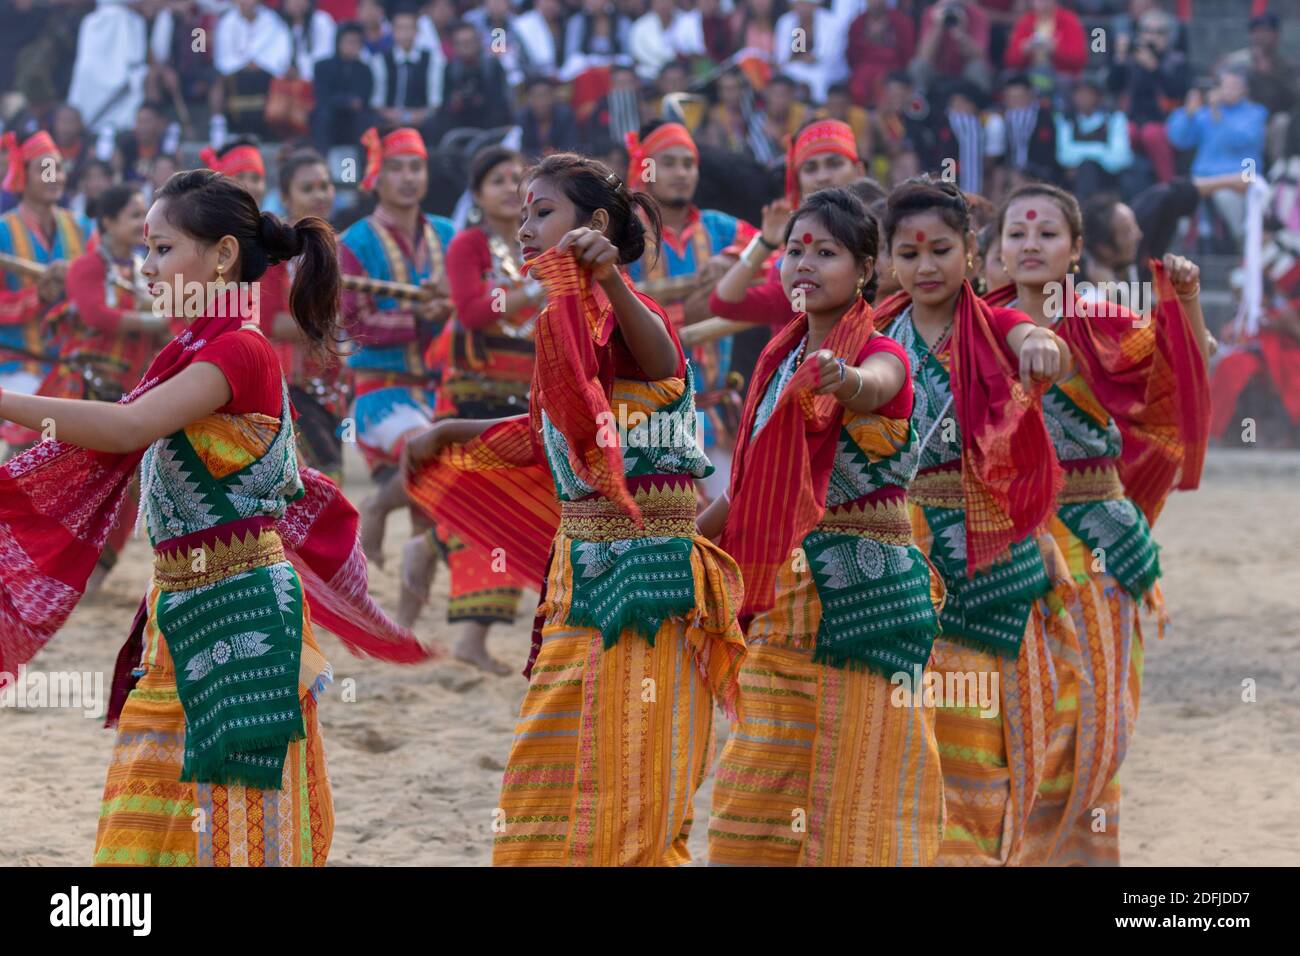 Danse traditionnelle naga interprétée par des femmes dans le patrimoine de Kisama Village de Nagaland Inde pendant le festival du charme le 2 décembre 2016 Banque D'Images